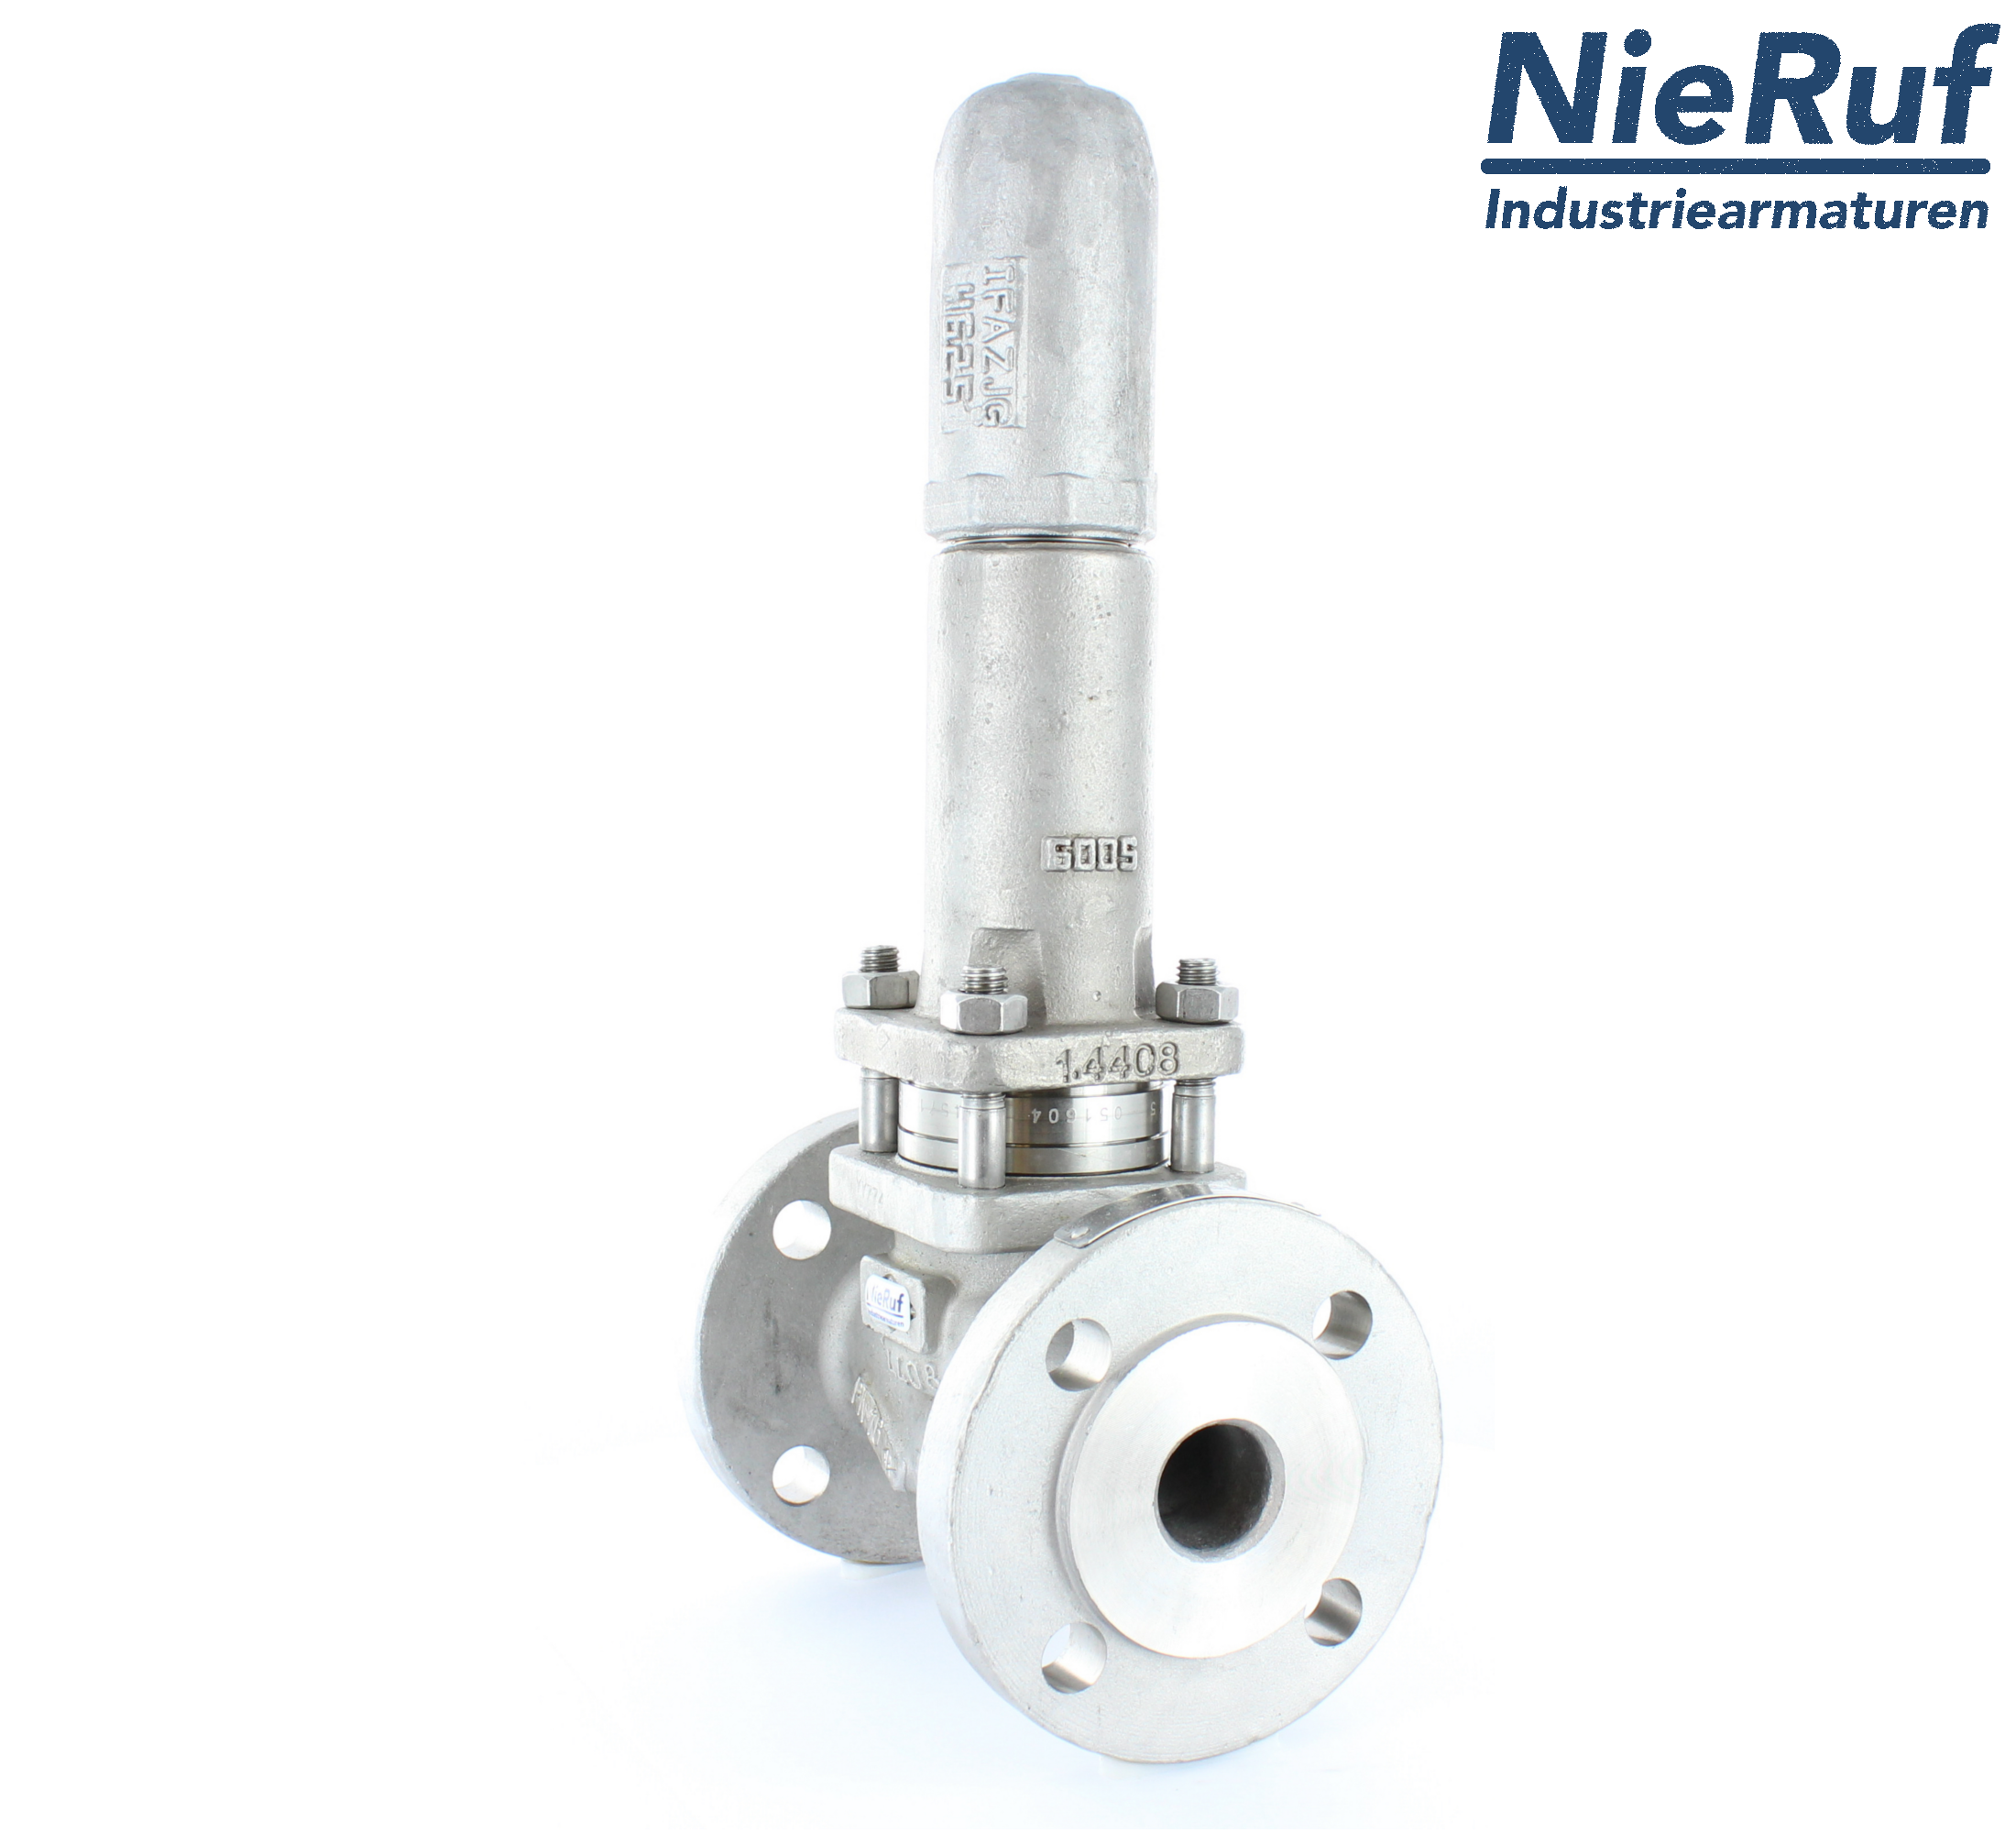 piston overflow valve DN 100 UV13 cast iron 1.0619+N 4,0 - 10,0 bar